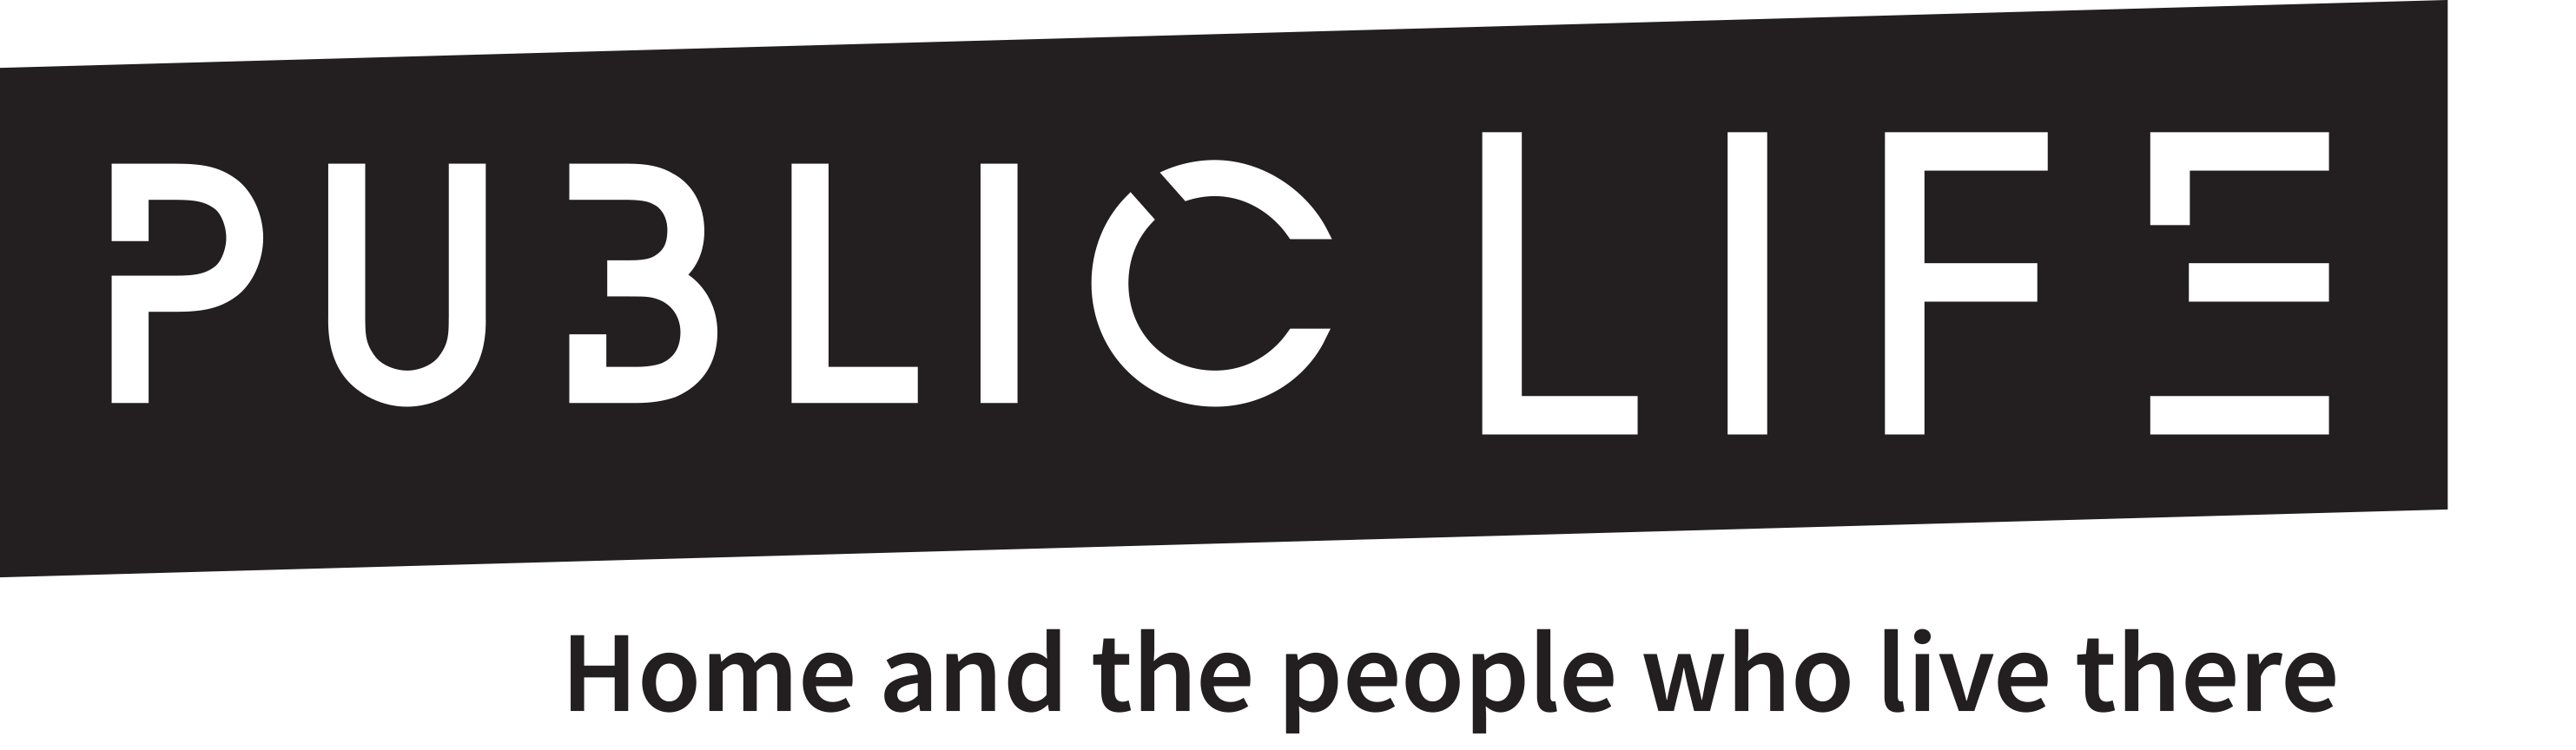 public life logo phase 2